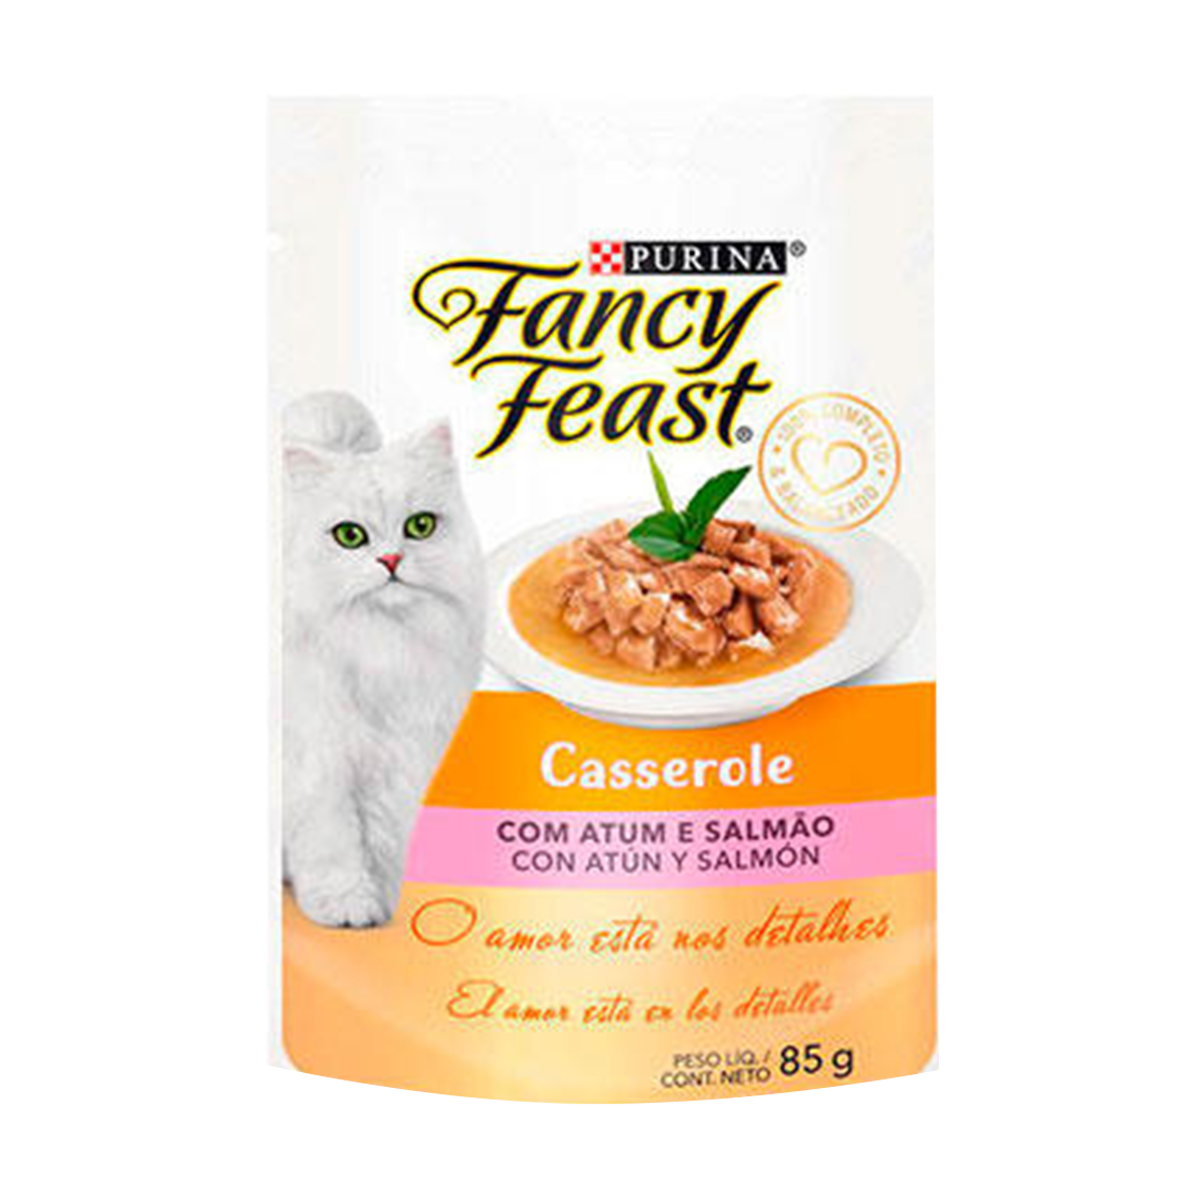 fancy-feast-casserole-atum-e-salmao-prueba-2%20%281%29.png